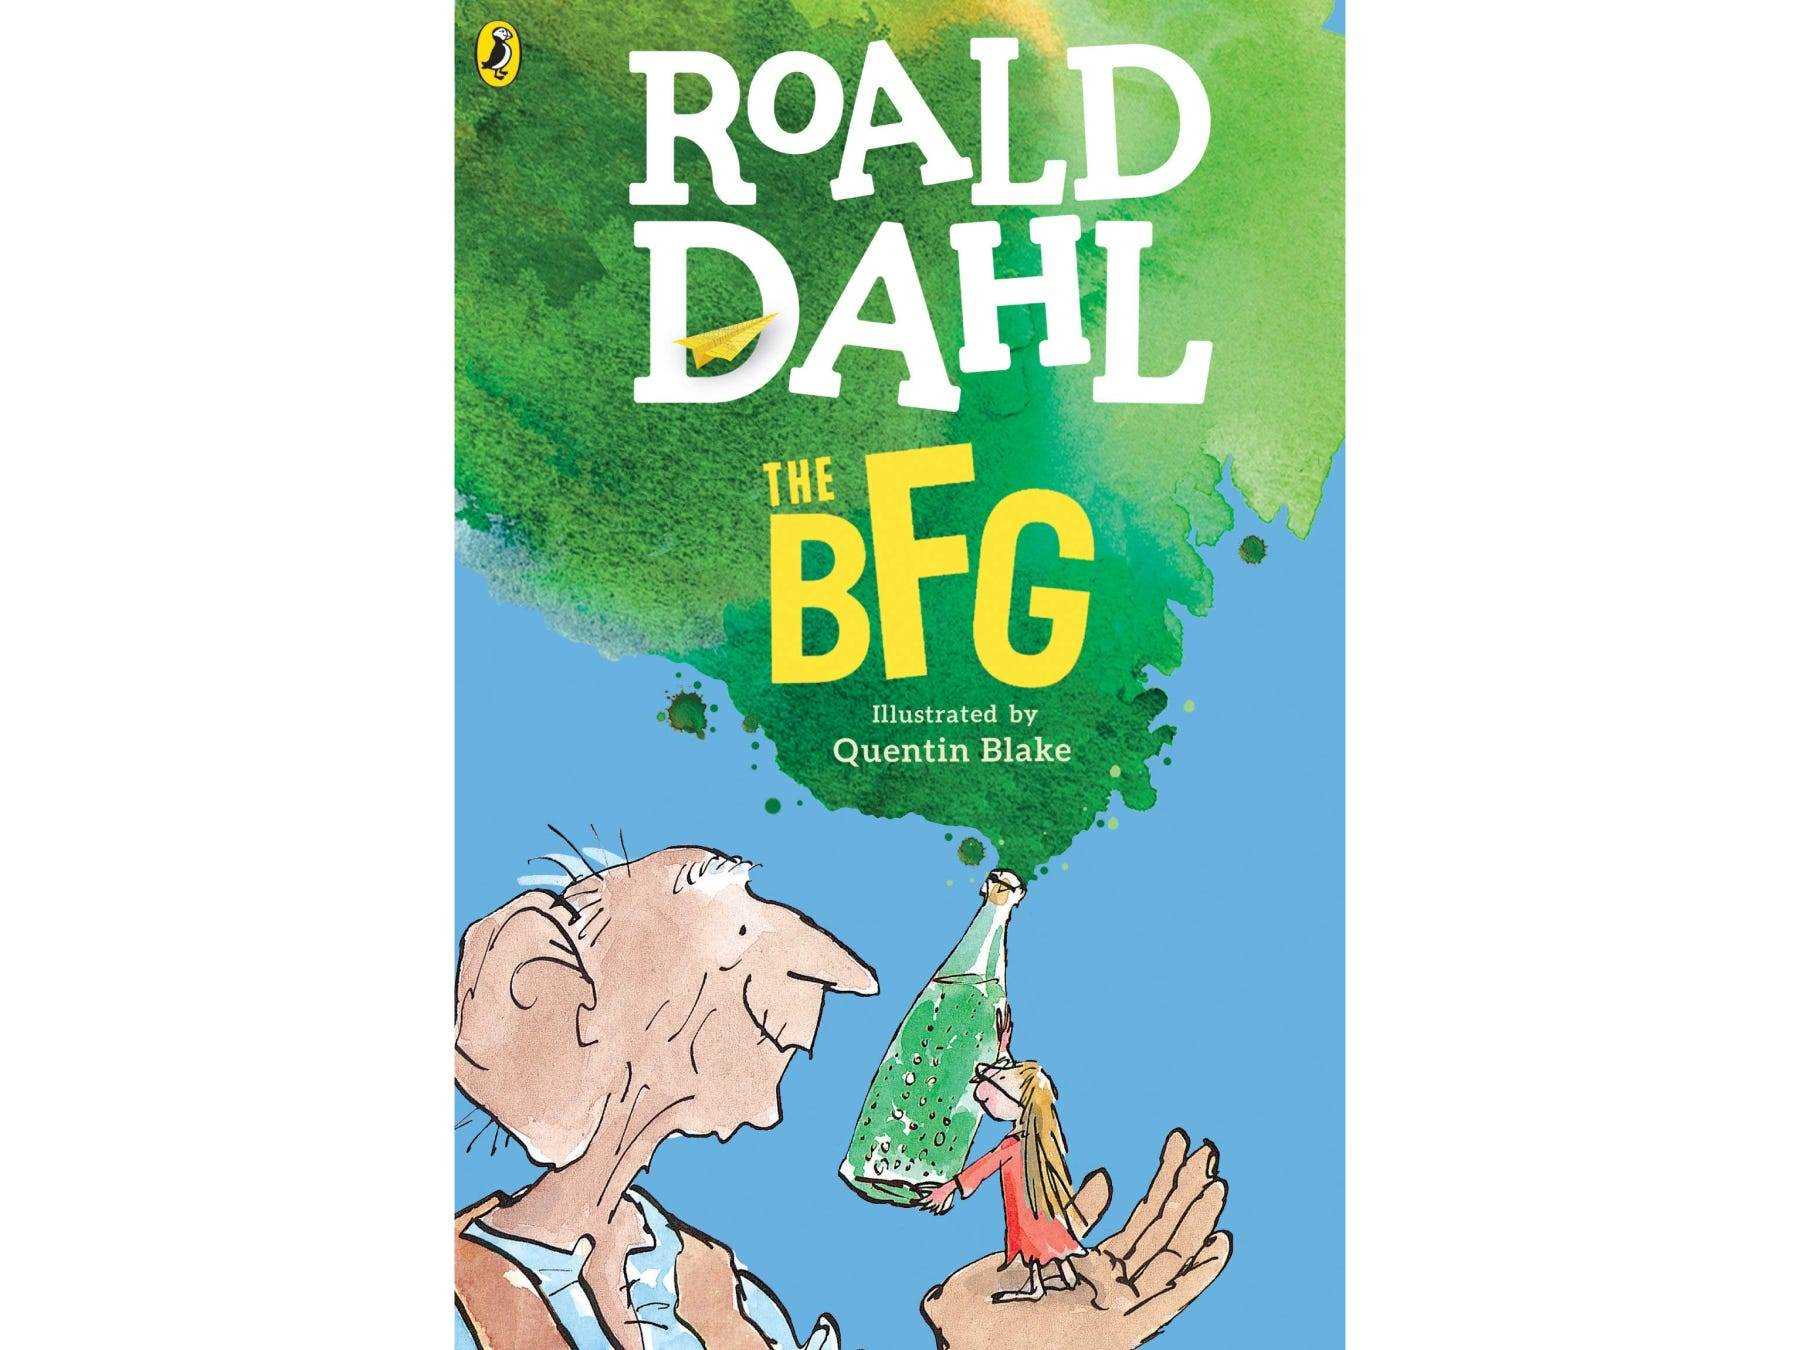 das bfg-Cover mit einer Illustration eines Mannes, der ein Kind mit einer grünen Rauchflasche in der Hand hält